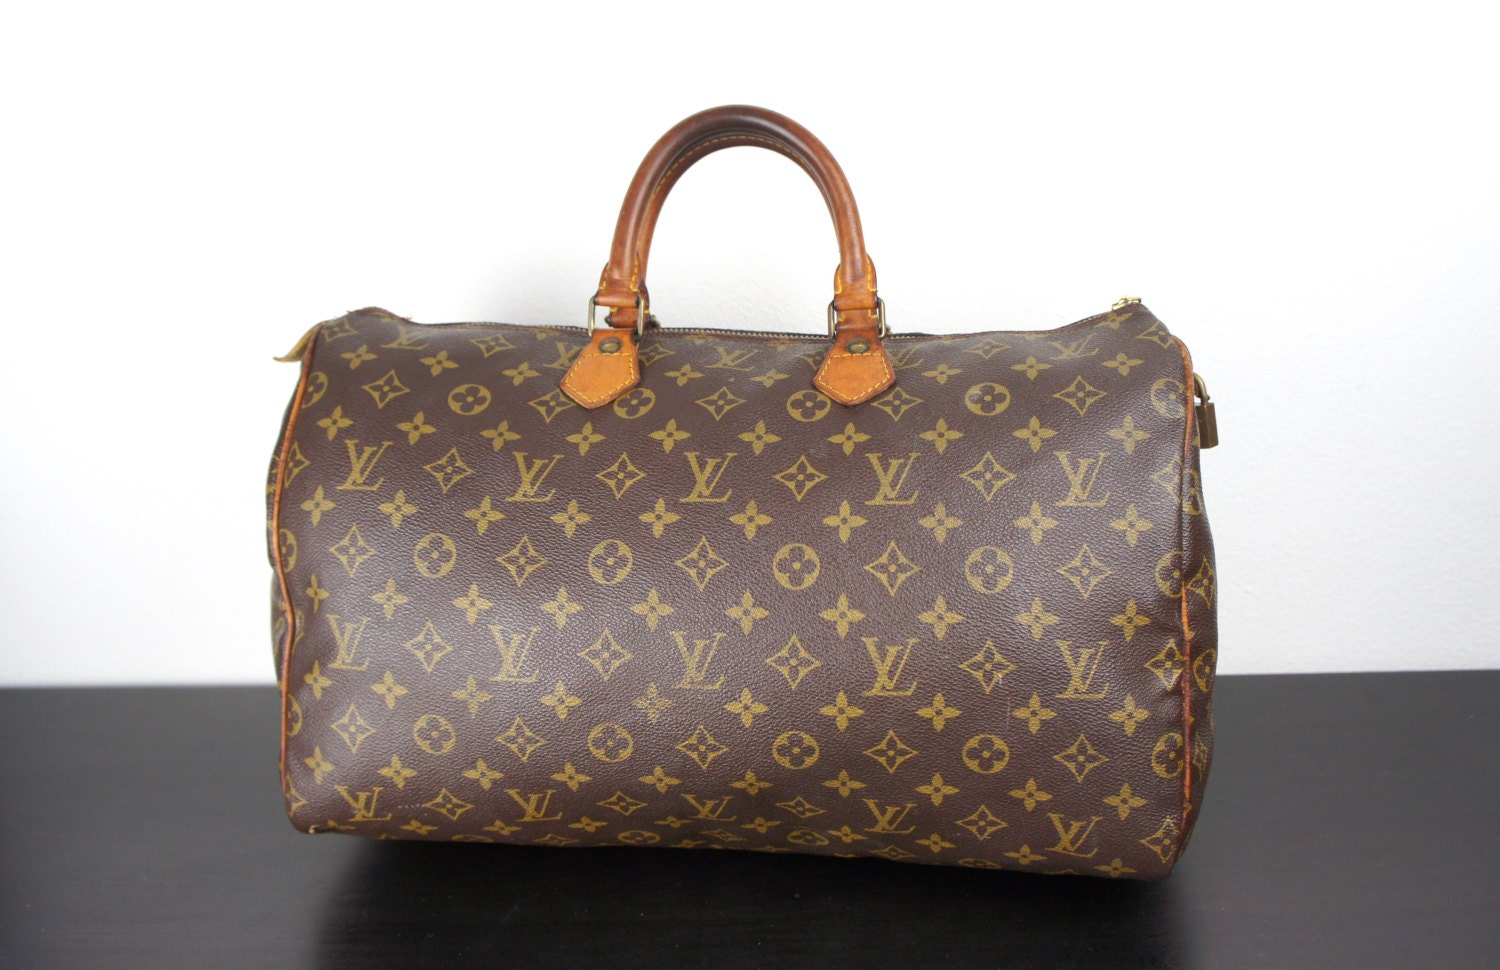 Vintage Louis Vuitton Size 40 Speedy Bag Medium Brown